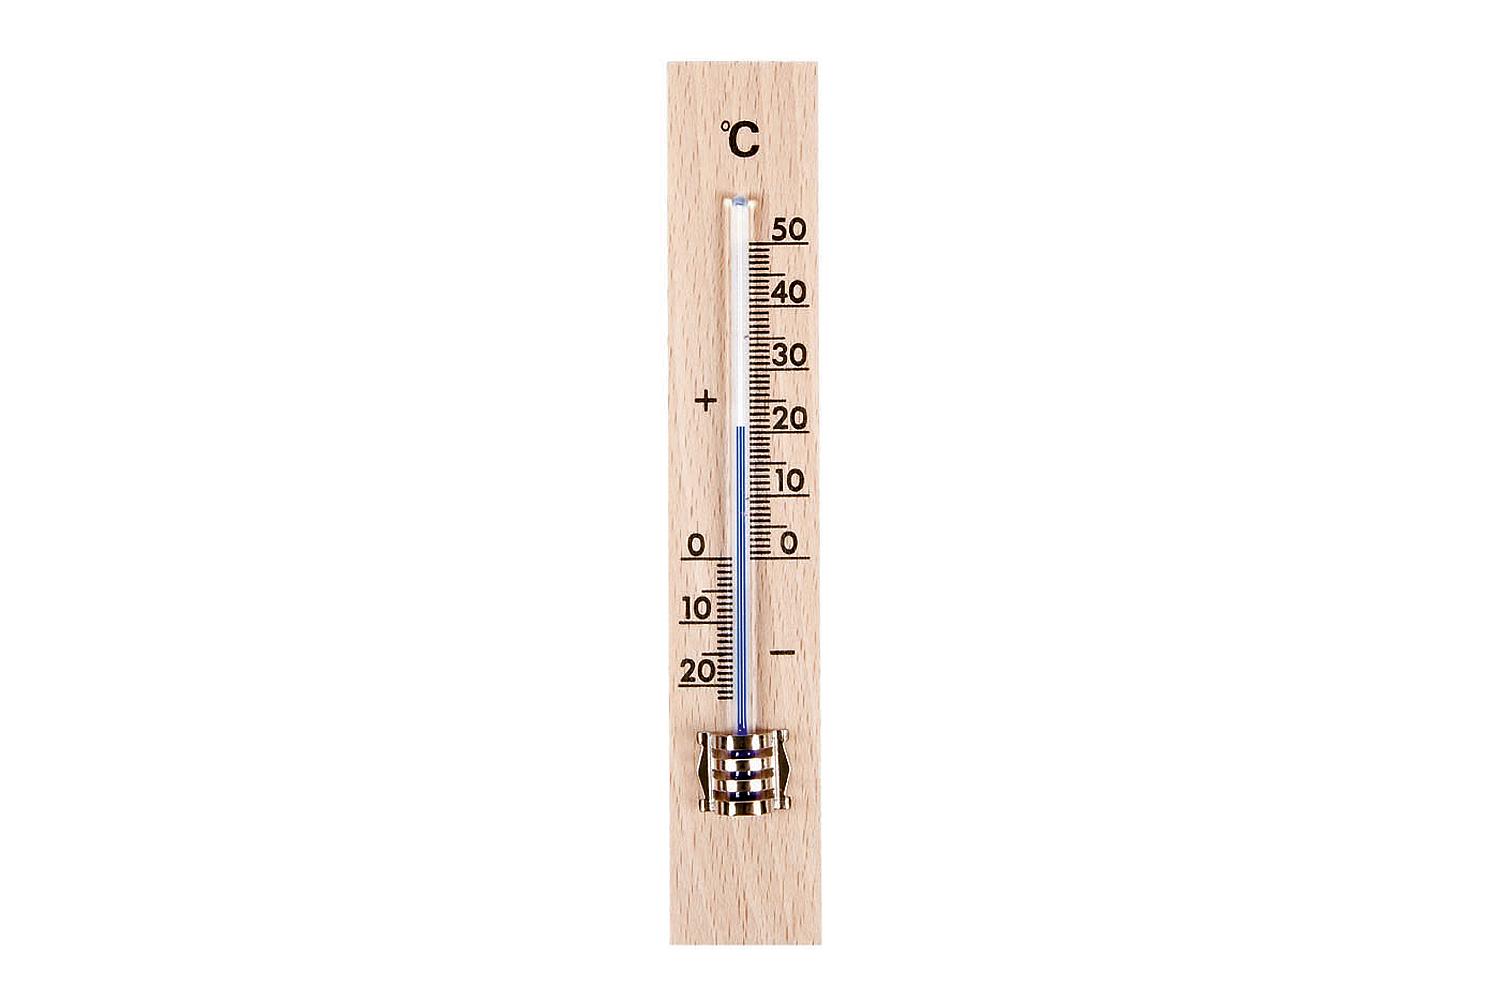 TFA Zimmer-Thermometer Holz 15x2,6cm  Buchenholz, zur Kontrolle der Innentemperatur,  Messbereich –20 °C bis +50 °C, hohe Genauigkeit